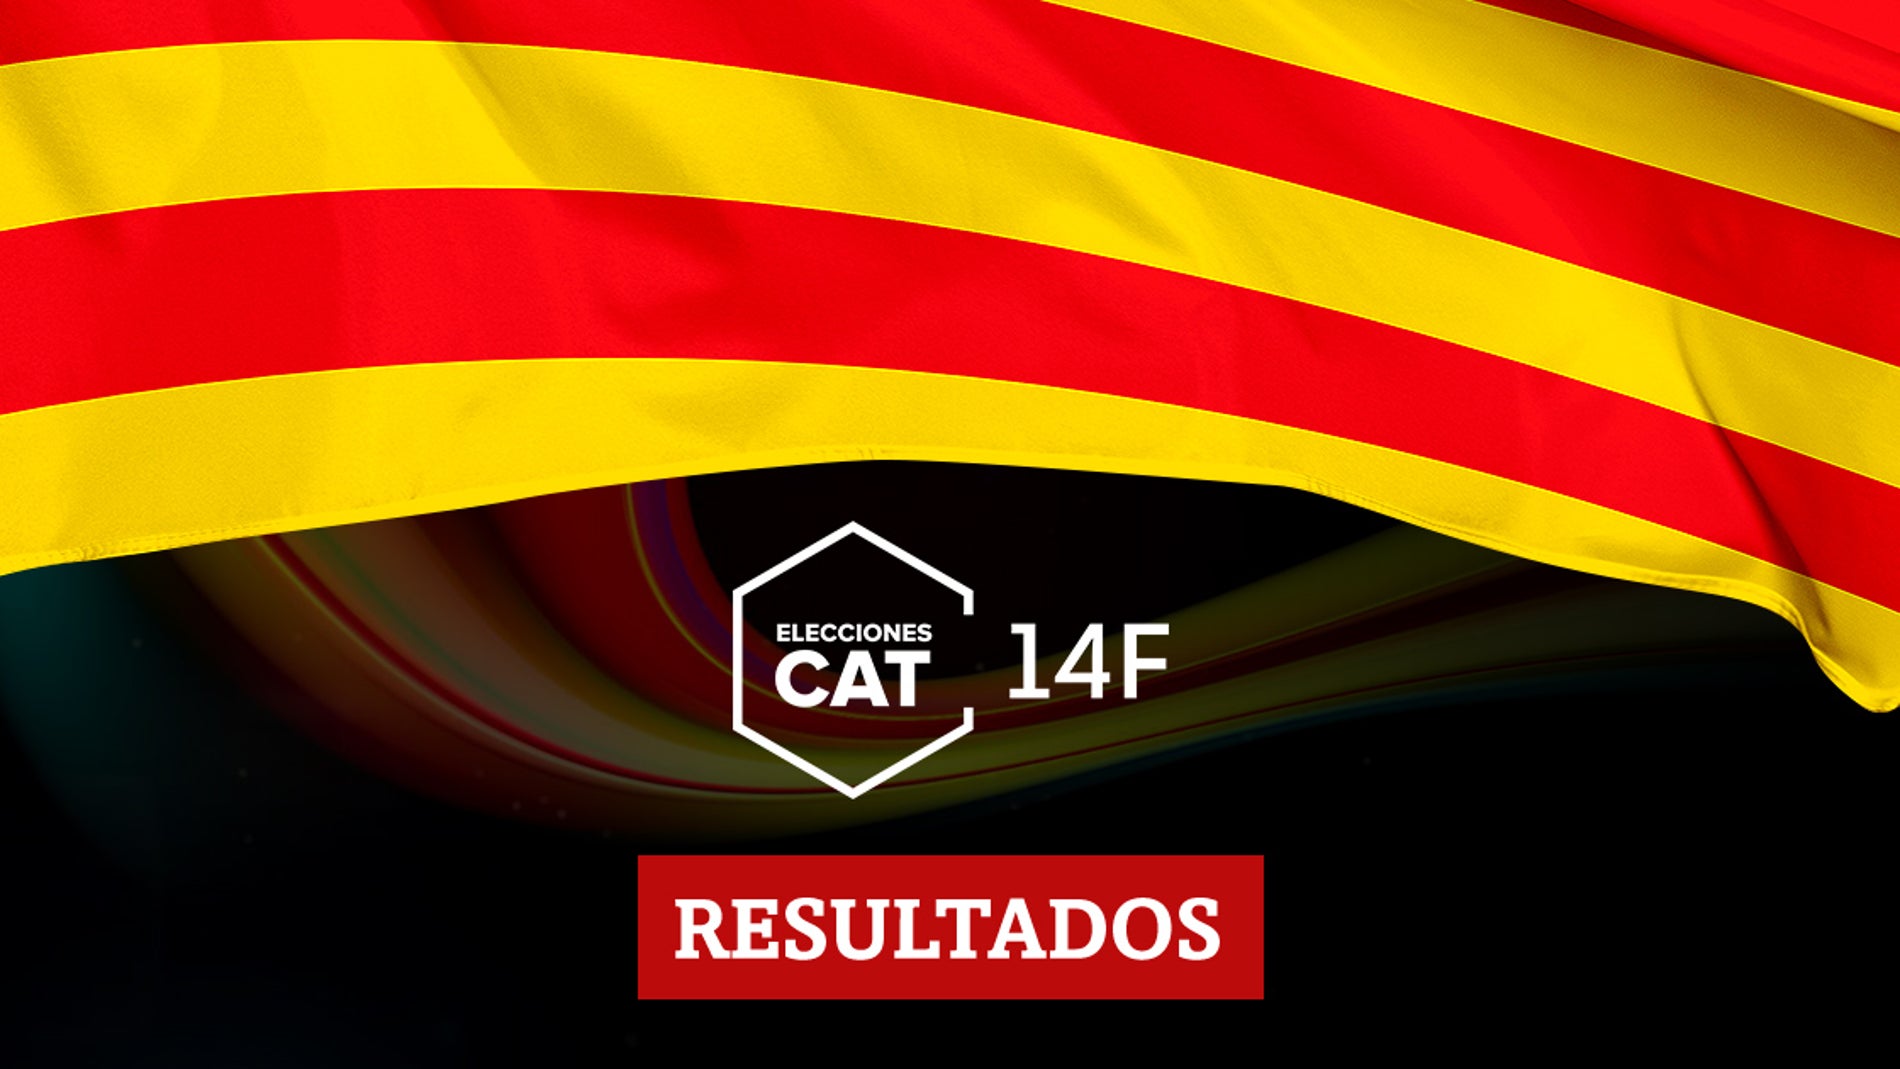 Resultados en Santa Oliva de las elecciones catalanas del 14F 2021